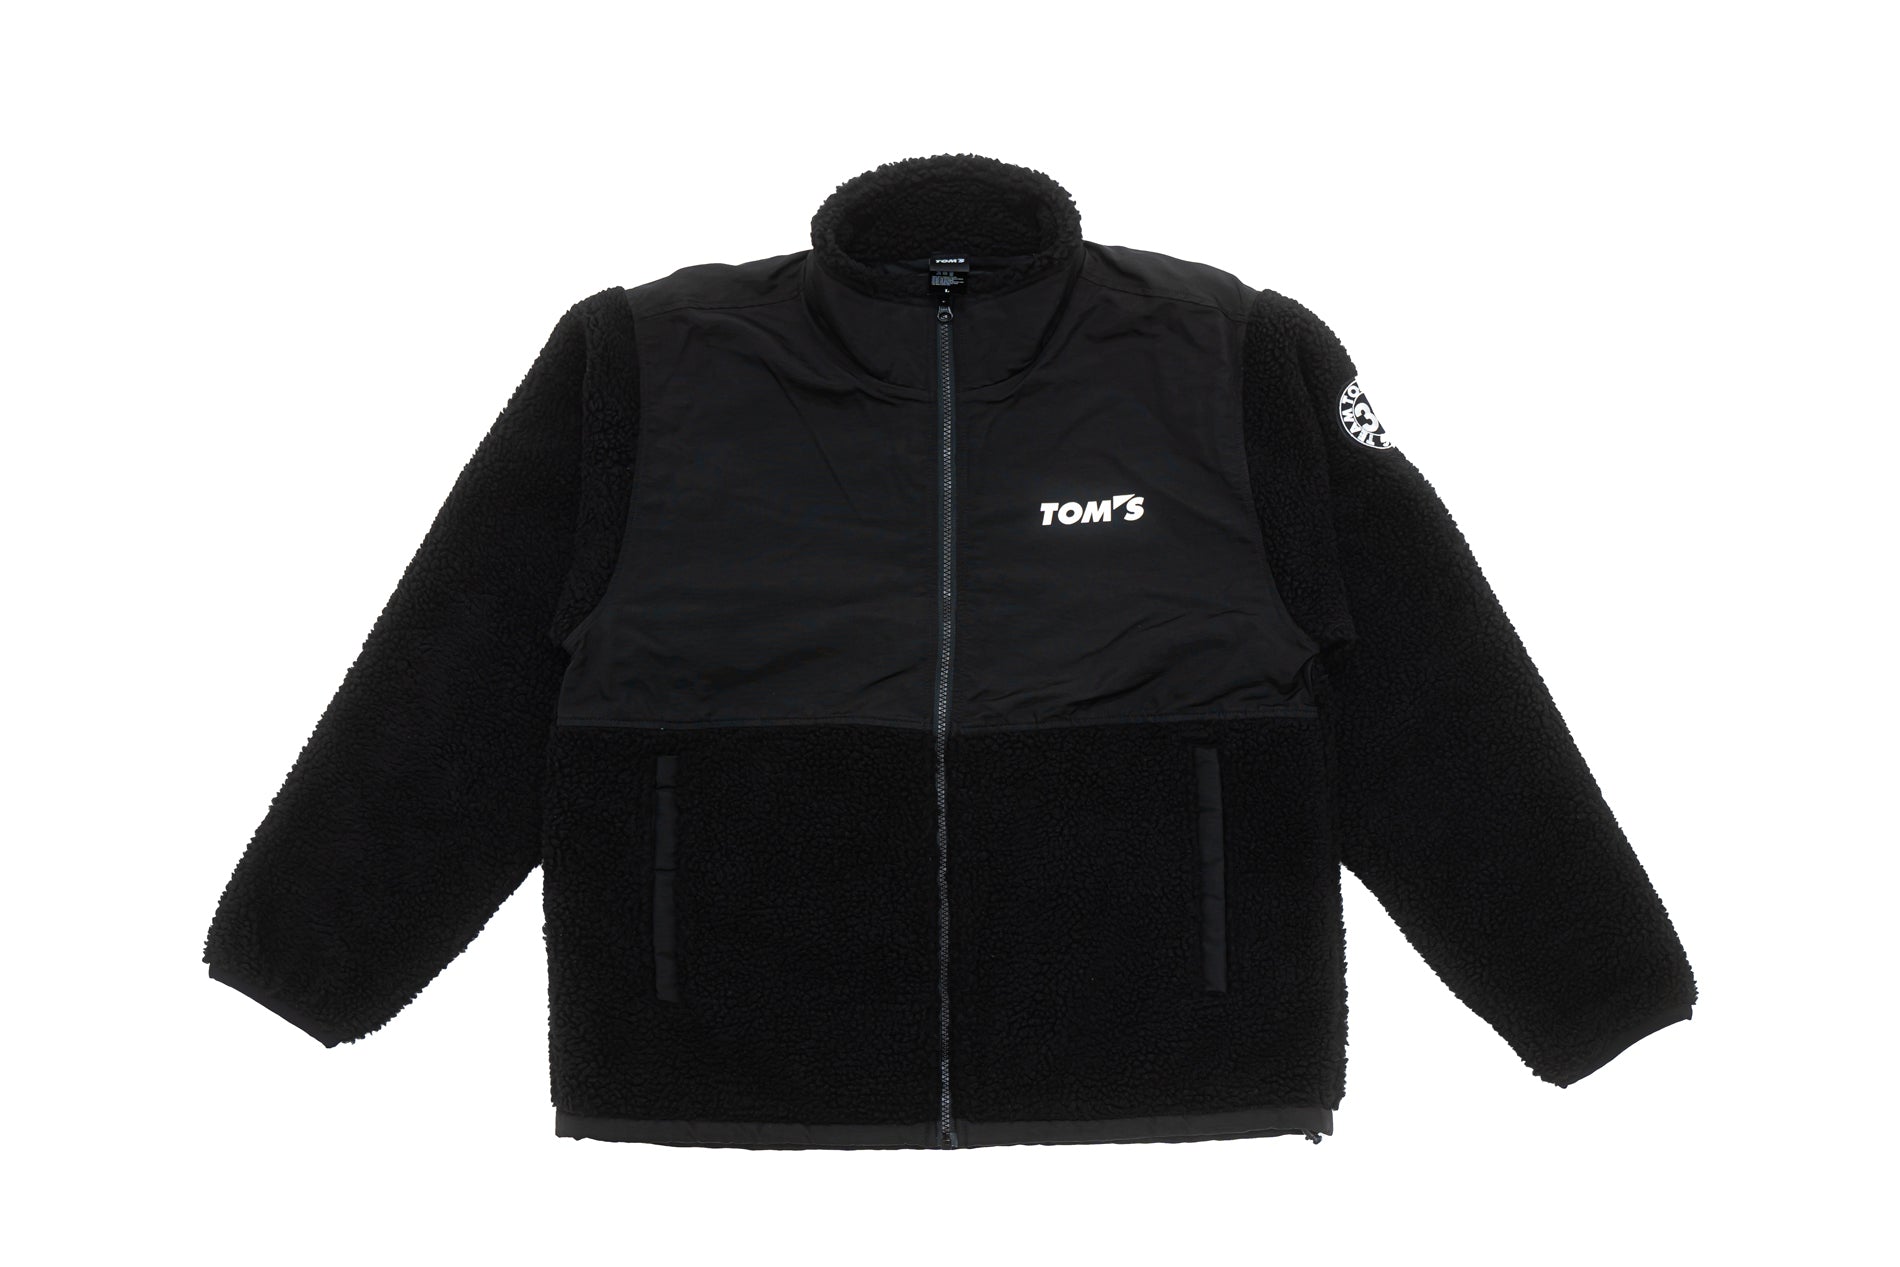 TOM'S Racing - 49th Anniversary Fleece Zip Jacket - Black-1